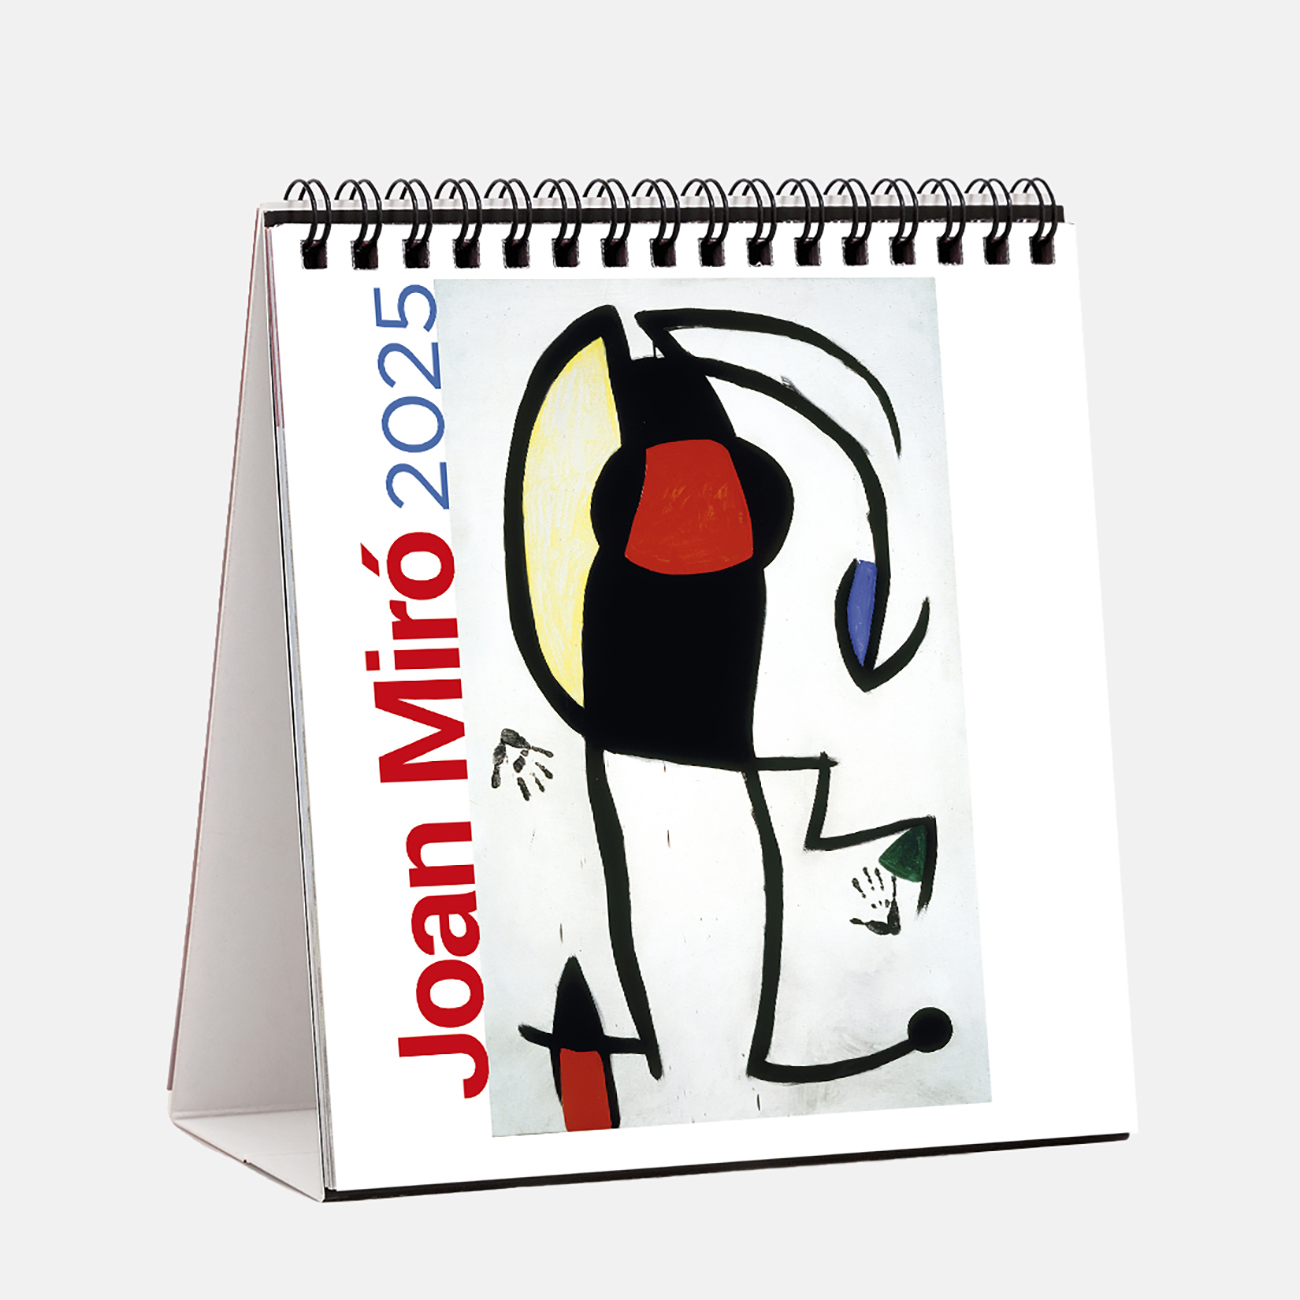 Calendario 2025 Miró - Palma s25mi calendario sobremesa 2025 joan miro